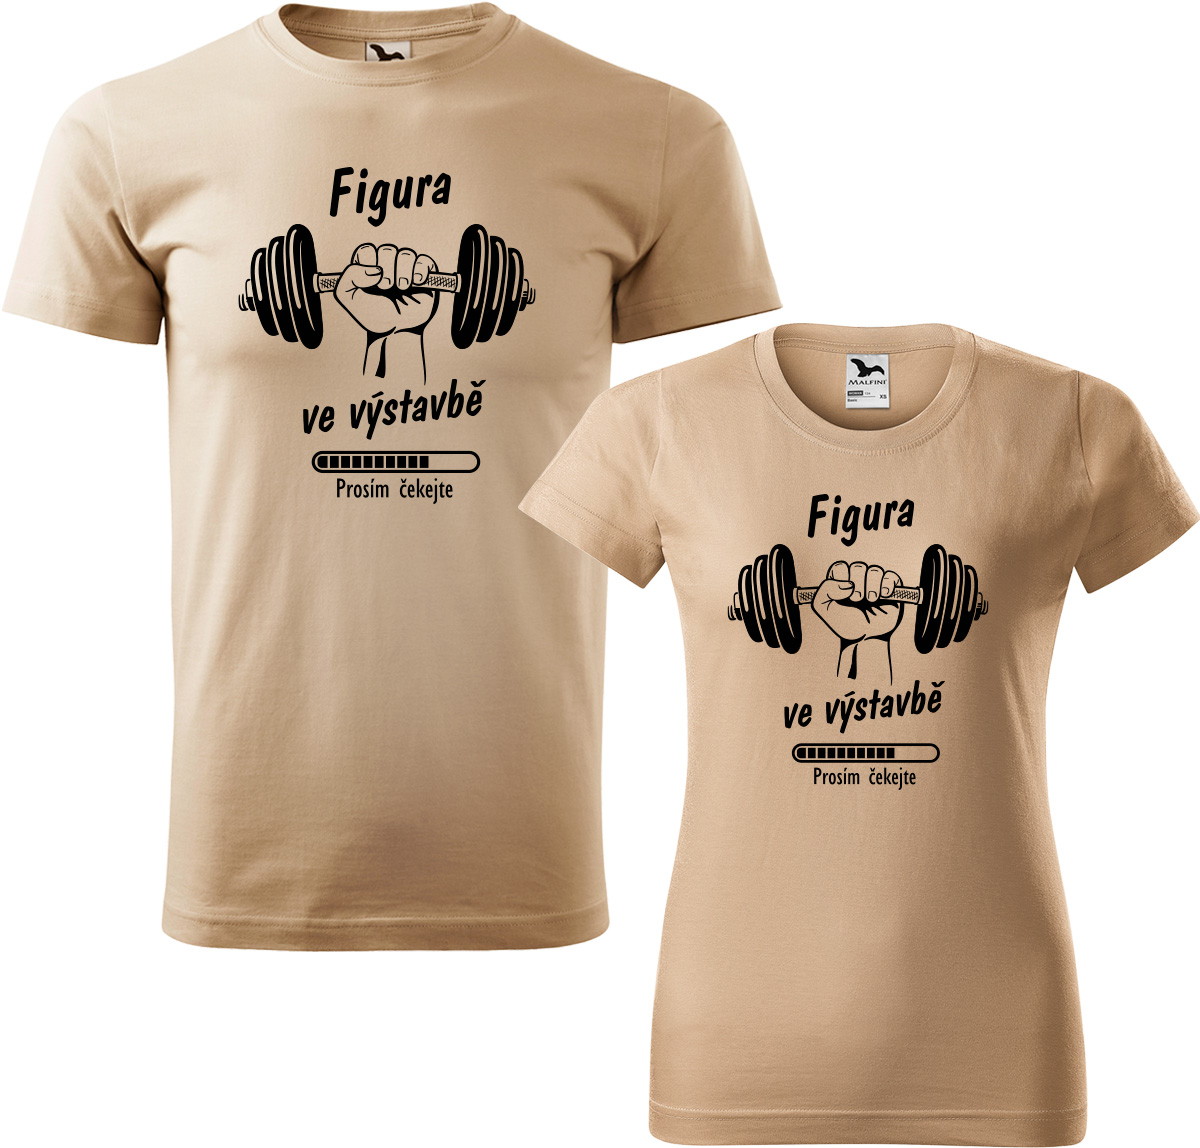 Trička pro páry - Figura ve výstavbě Barva: Písková (08), Velikost dámské tričko: S, Velikost pánské tričko: XL